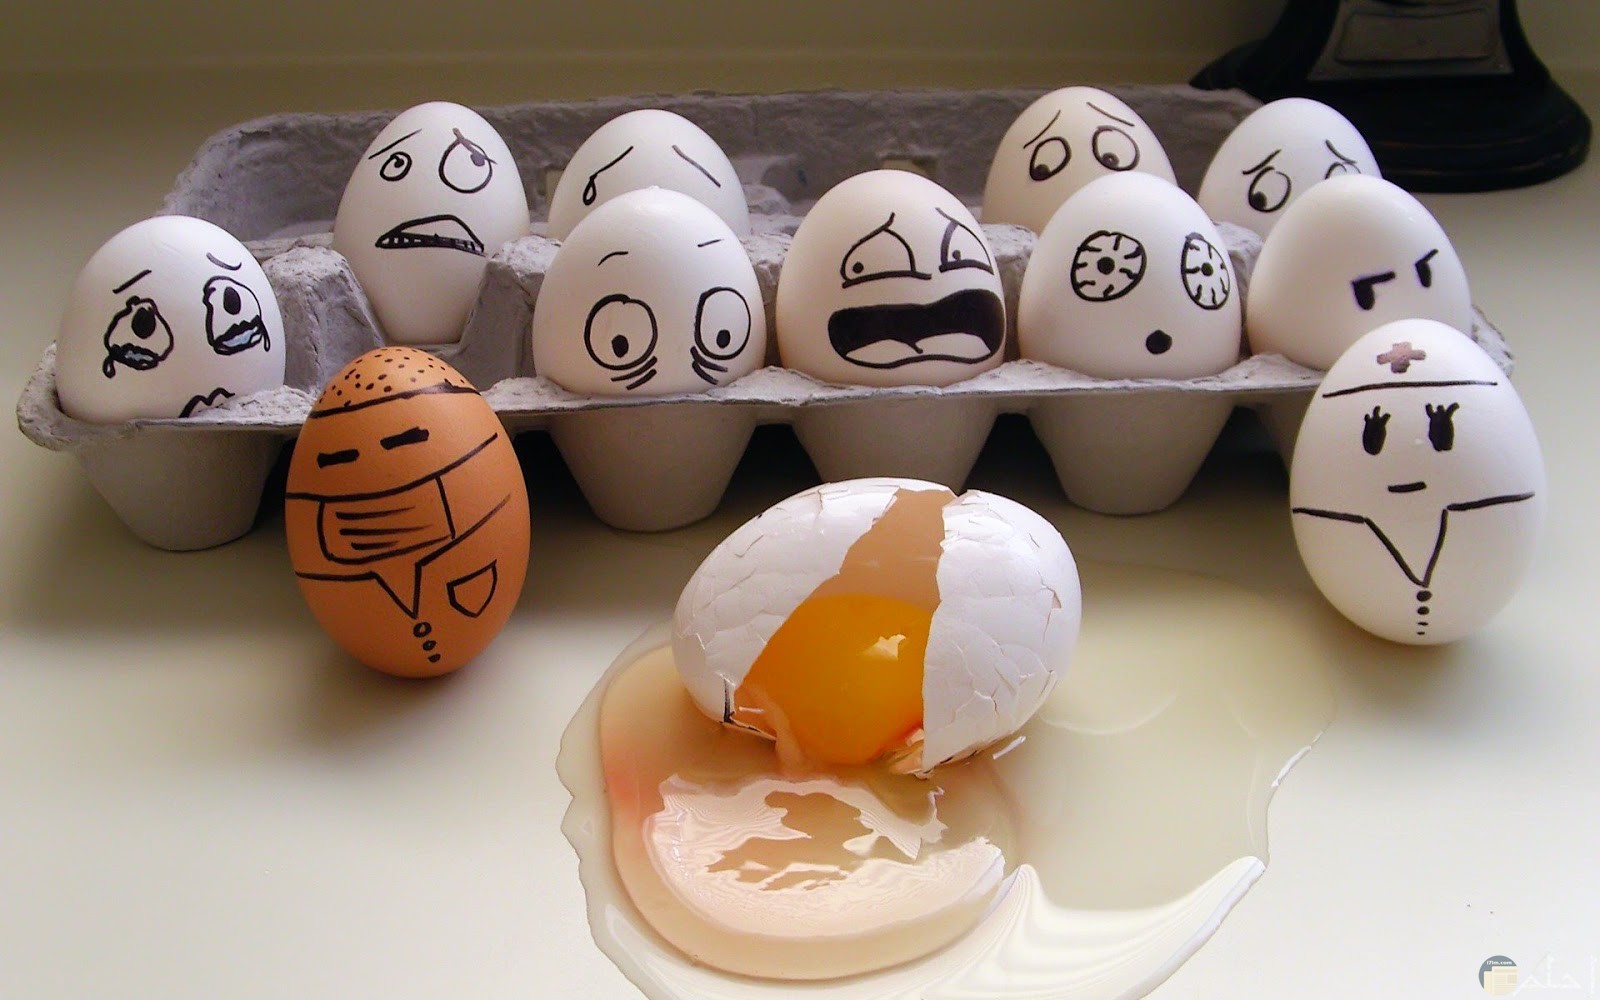 فنان يصنع من البيض في منزله صورة غريبة مضحكة جداً.